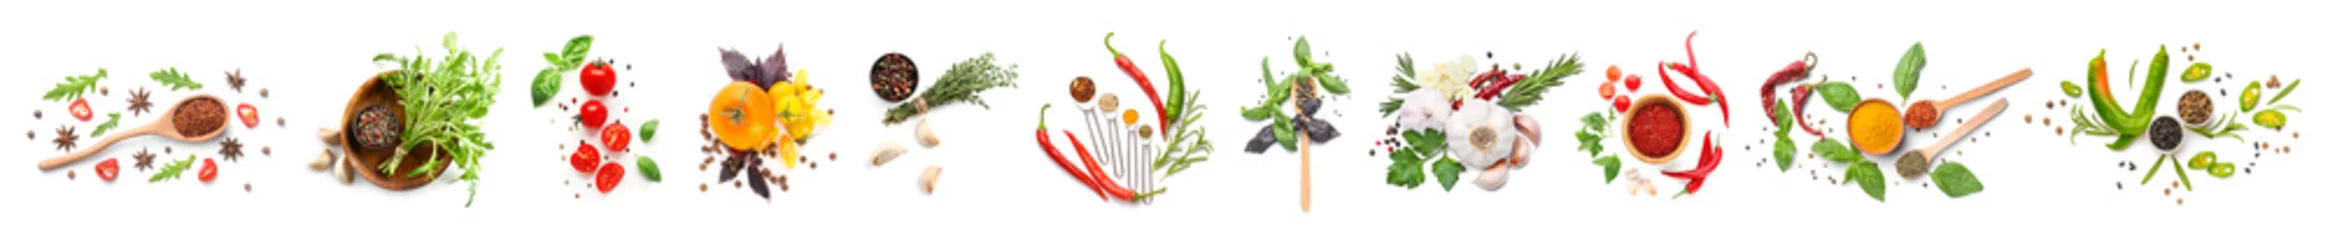 Foto op Plexiglas Verse groenten Verschillende verse specerijen, kruiden en groenten op witte achtergrond